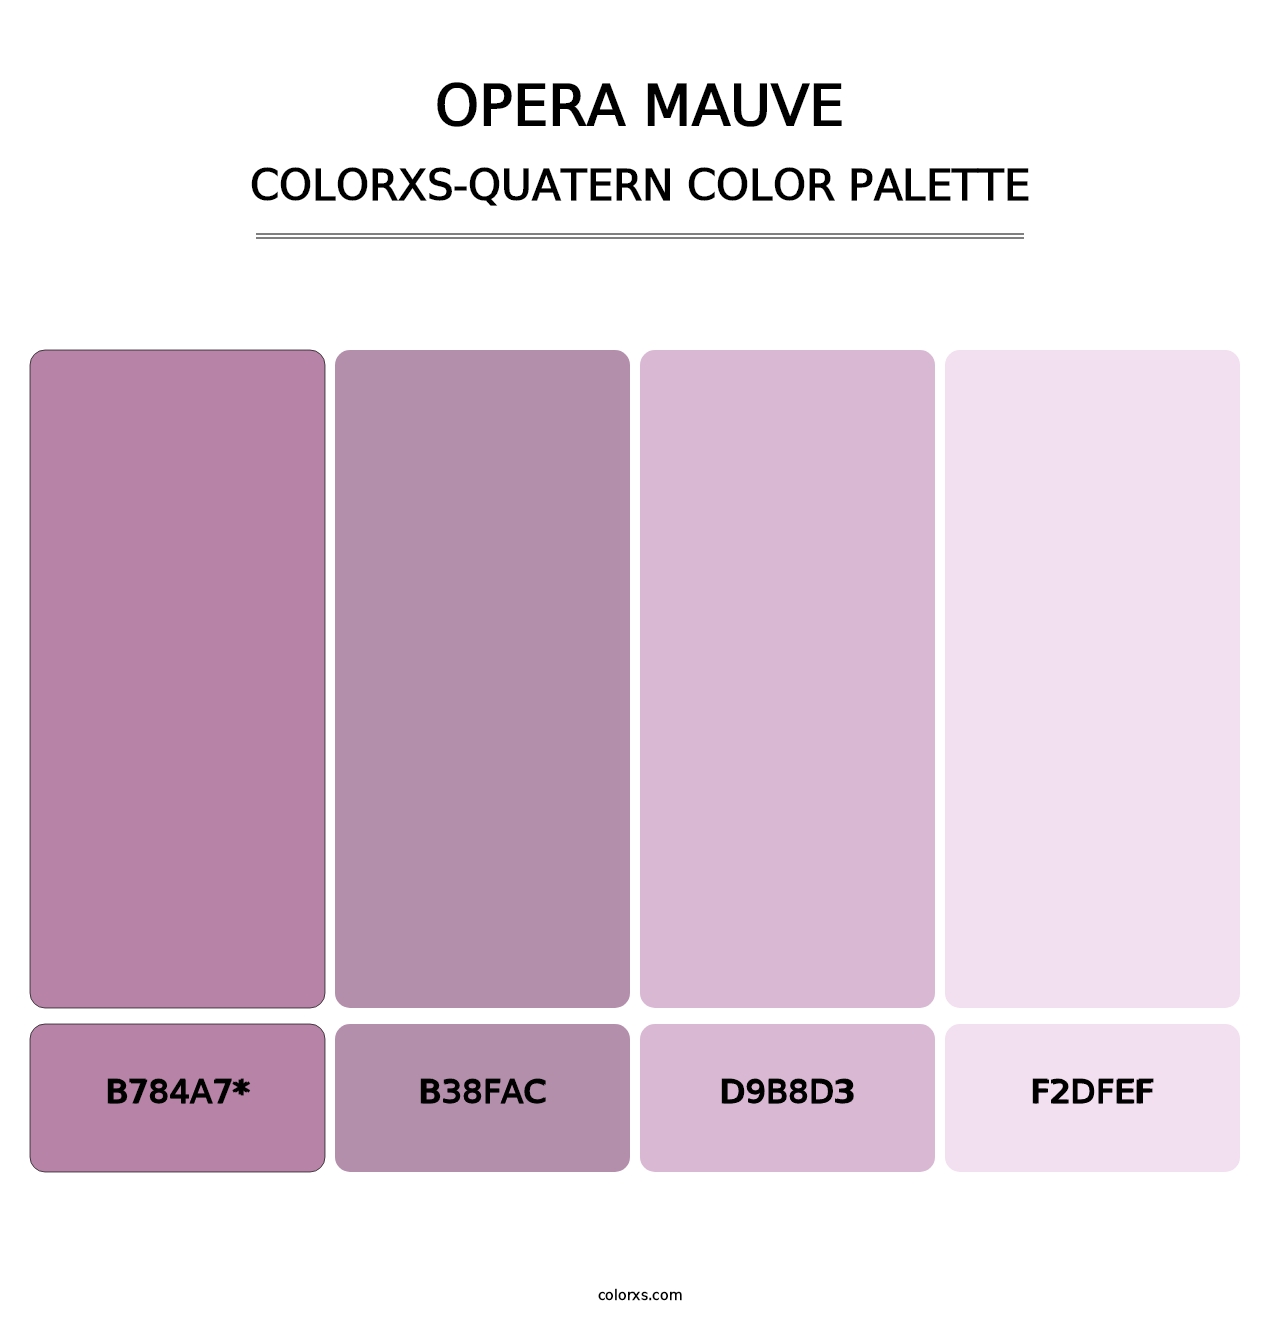 Opera Mauve - Colorxs Quatern Palette